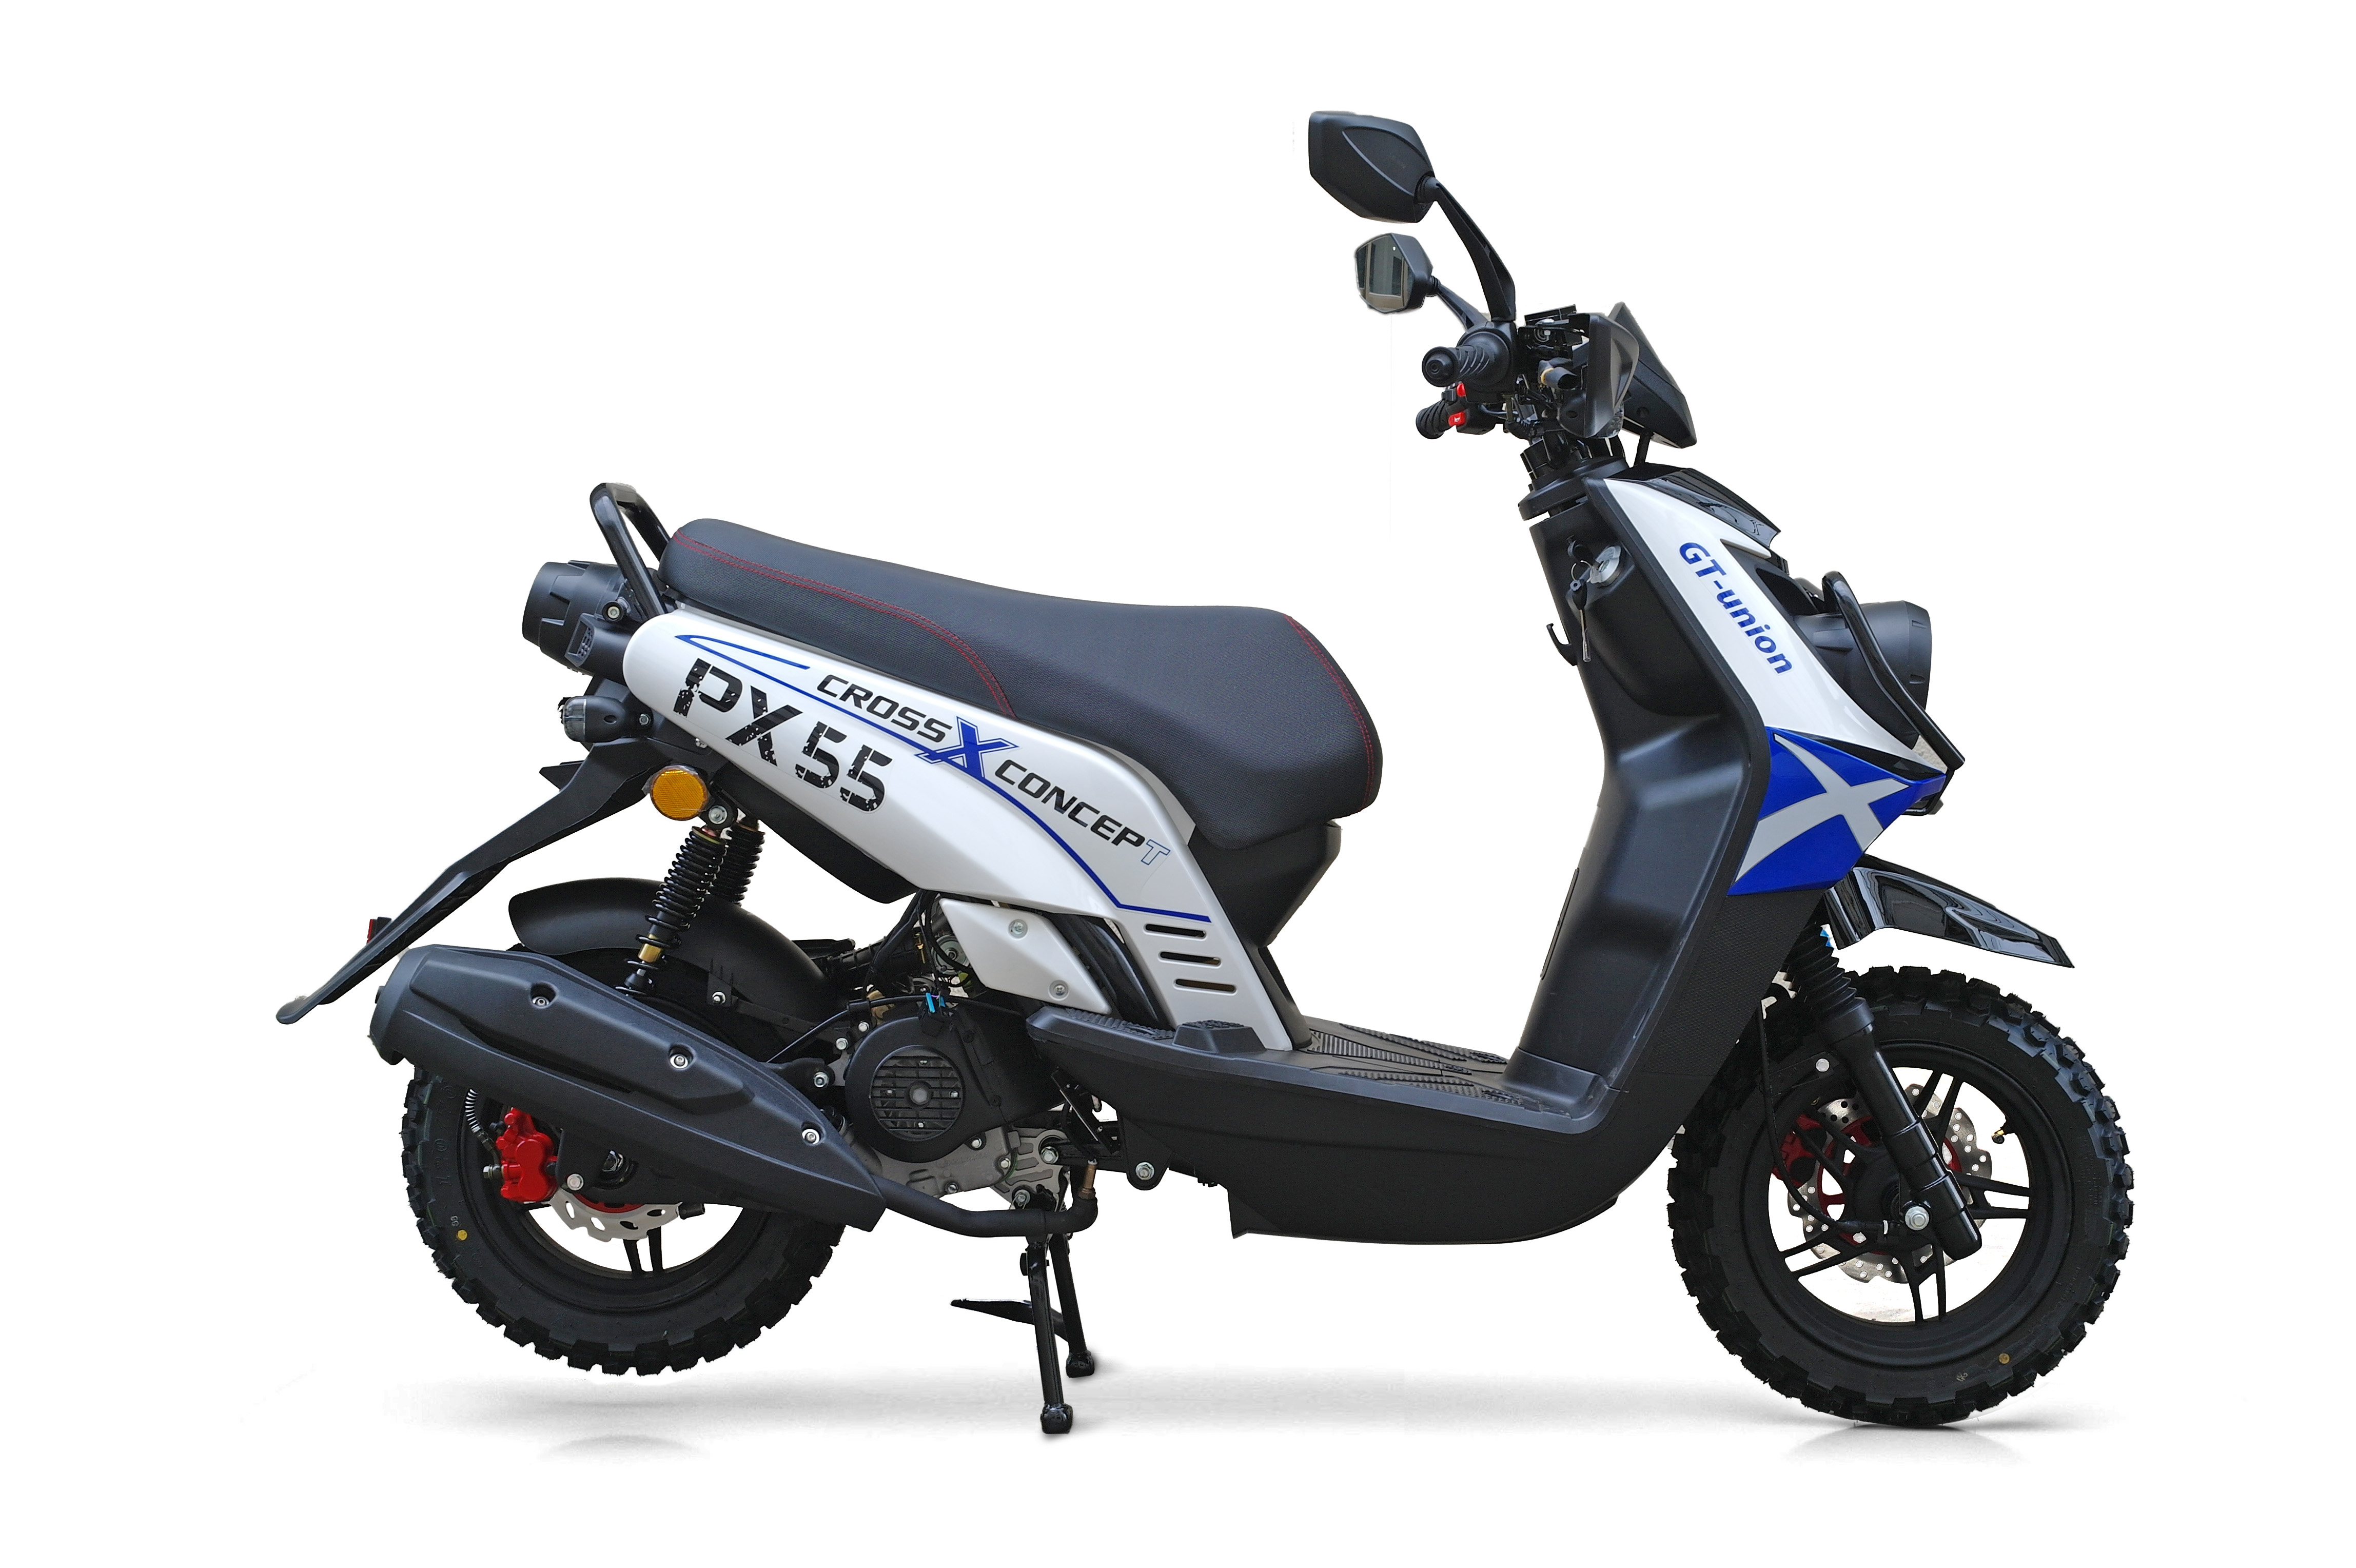 Yamaha blau 155mm Aufkleber - Motorrad Roller Teil 50cc billig